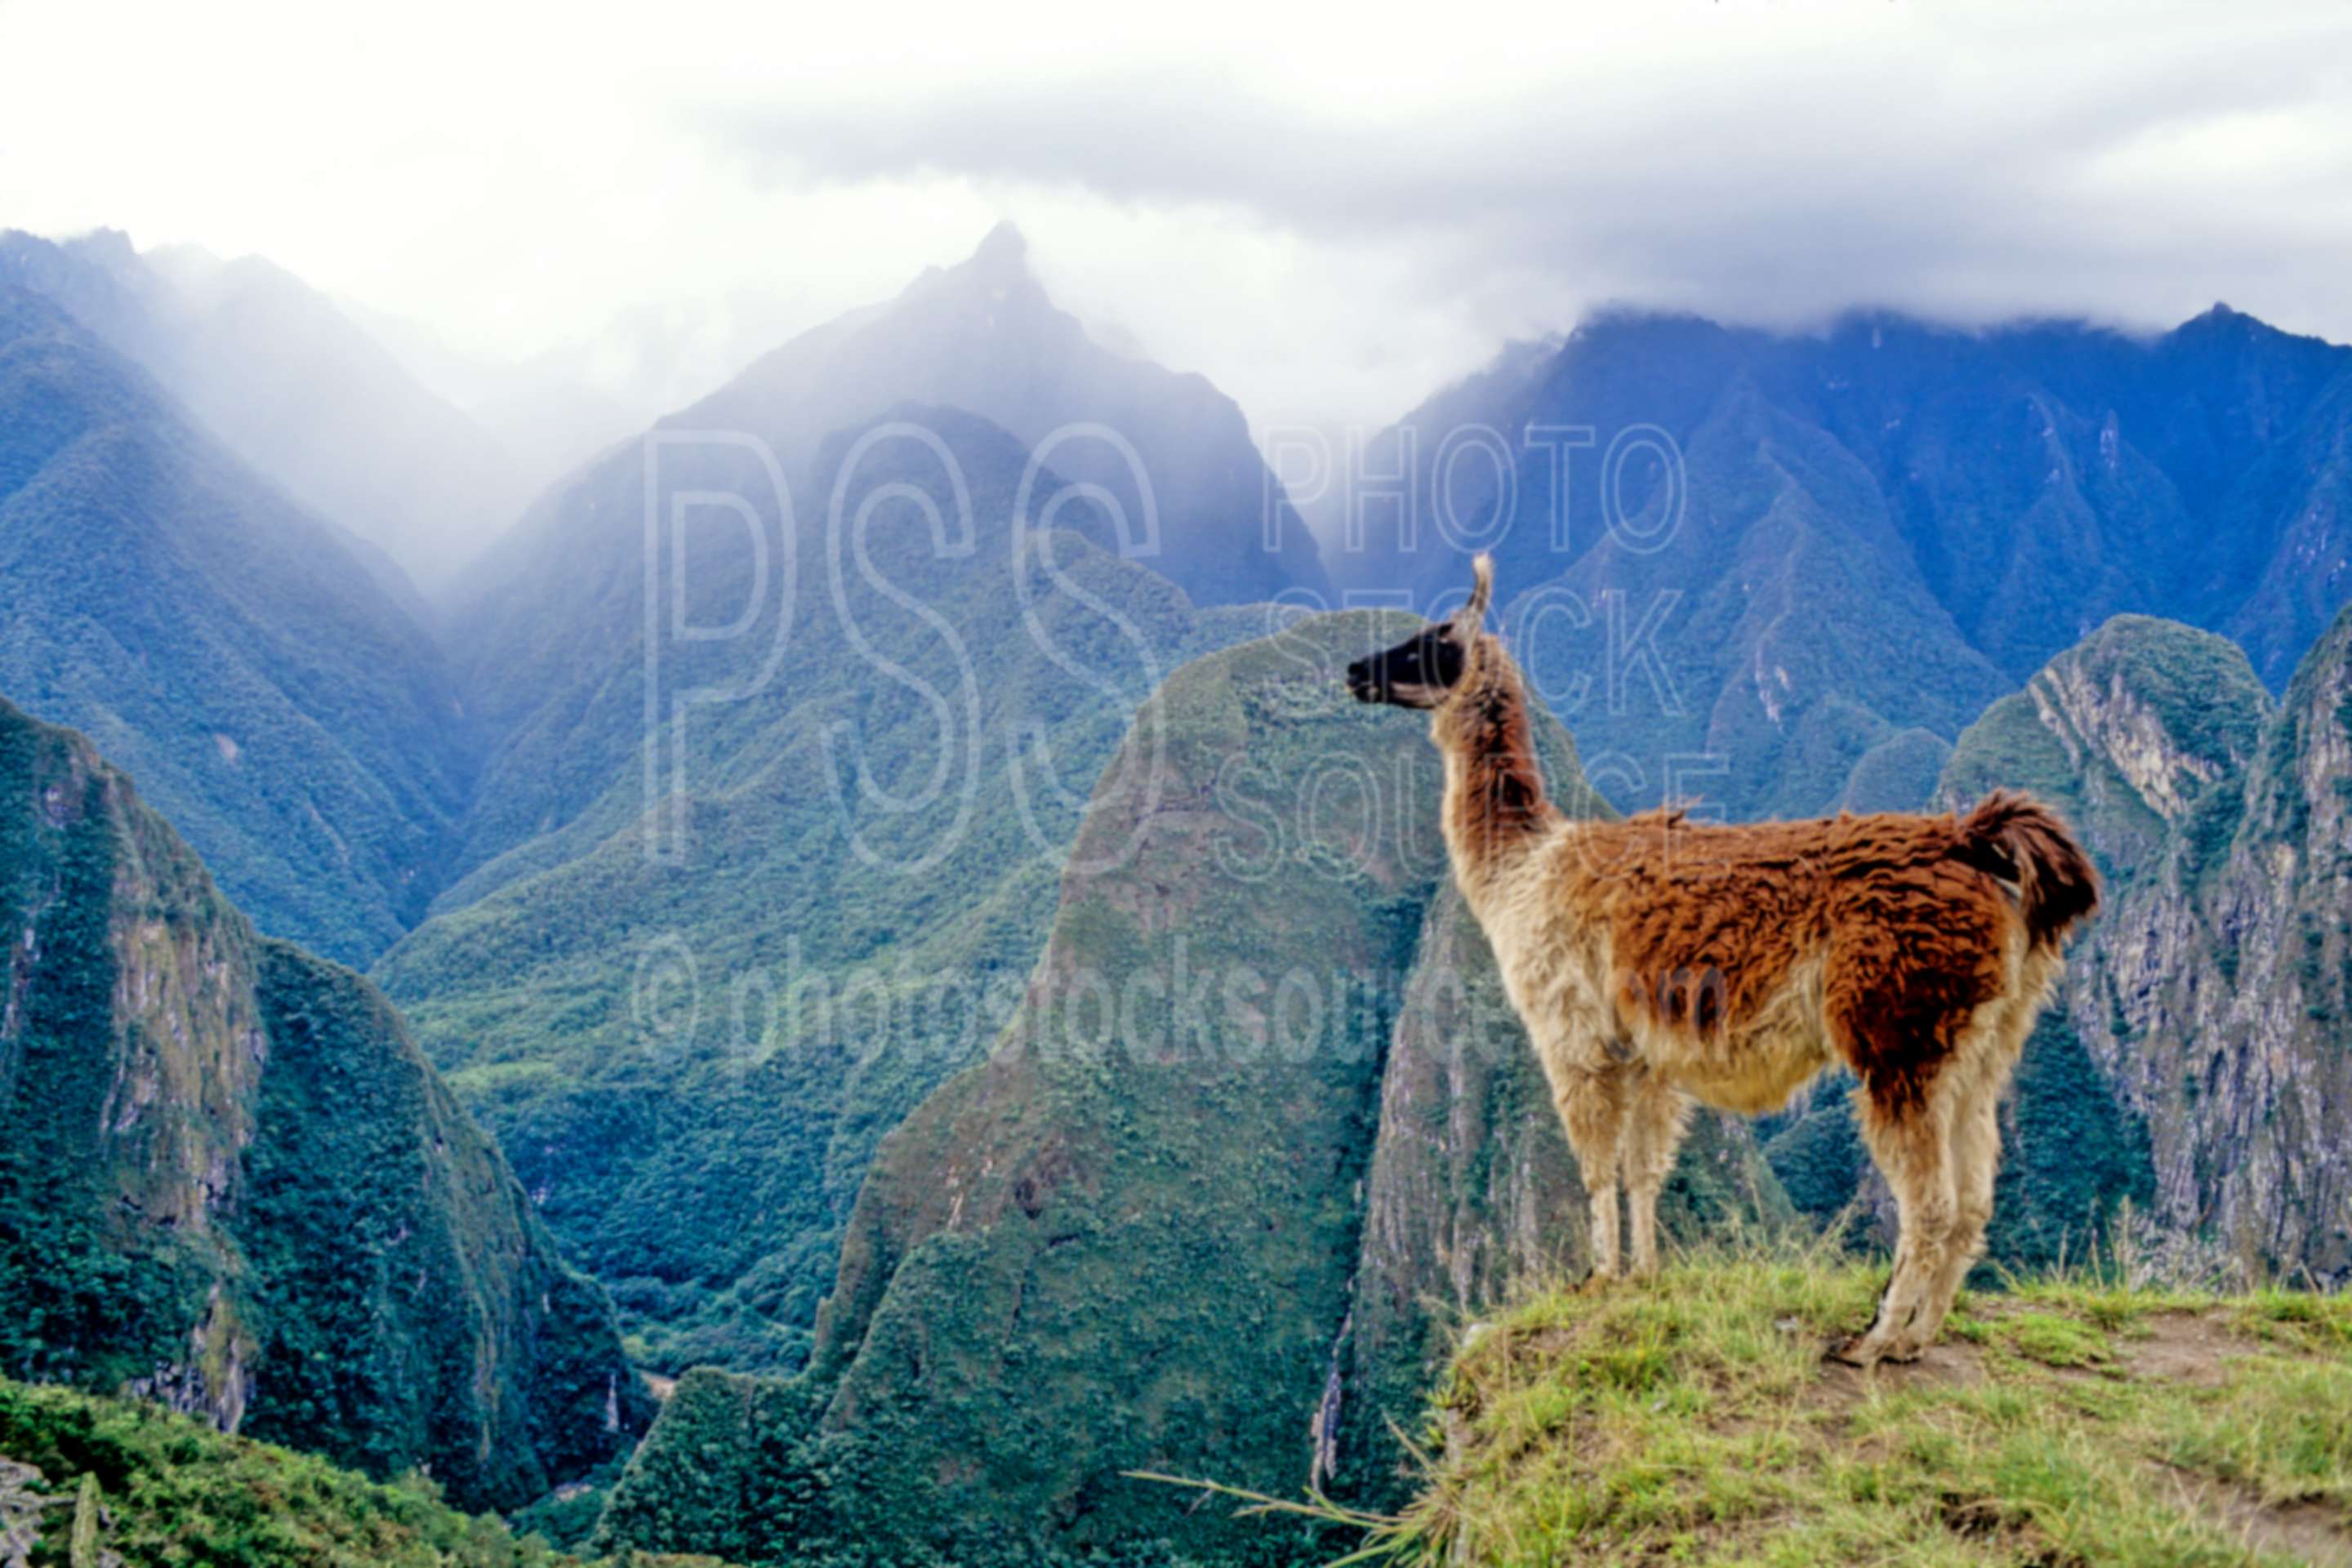 Llama overlooking canyon,canyon,llama,mountain,animals